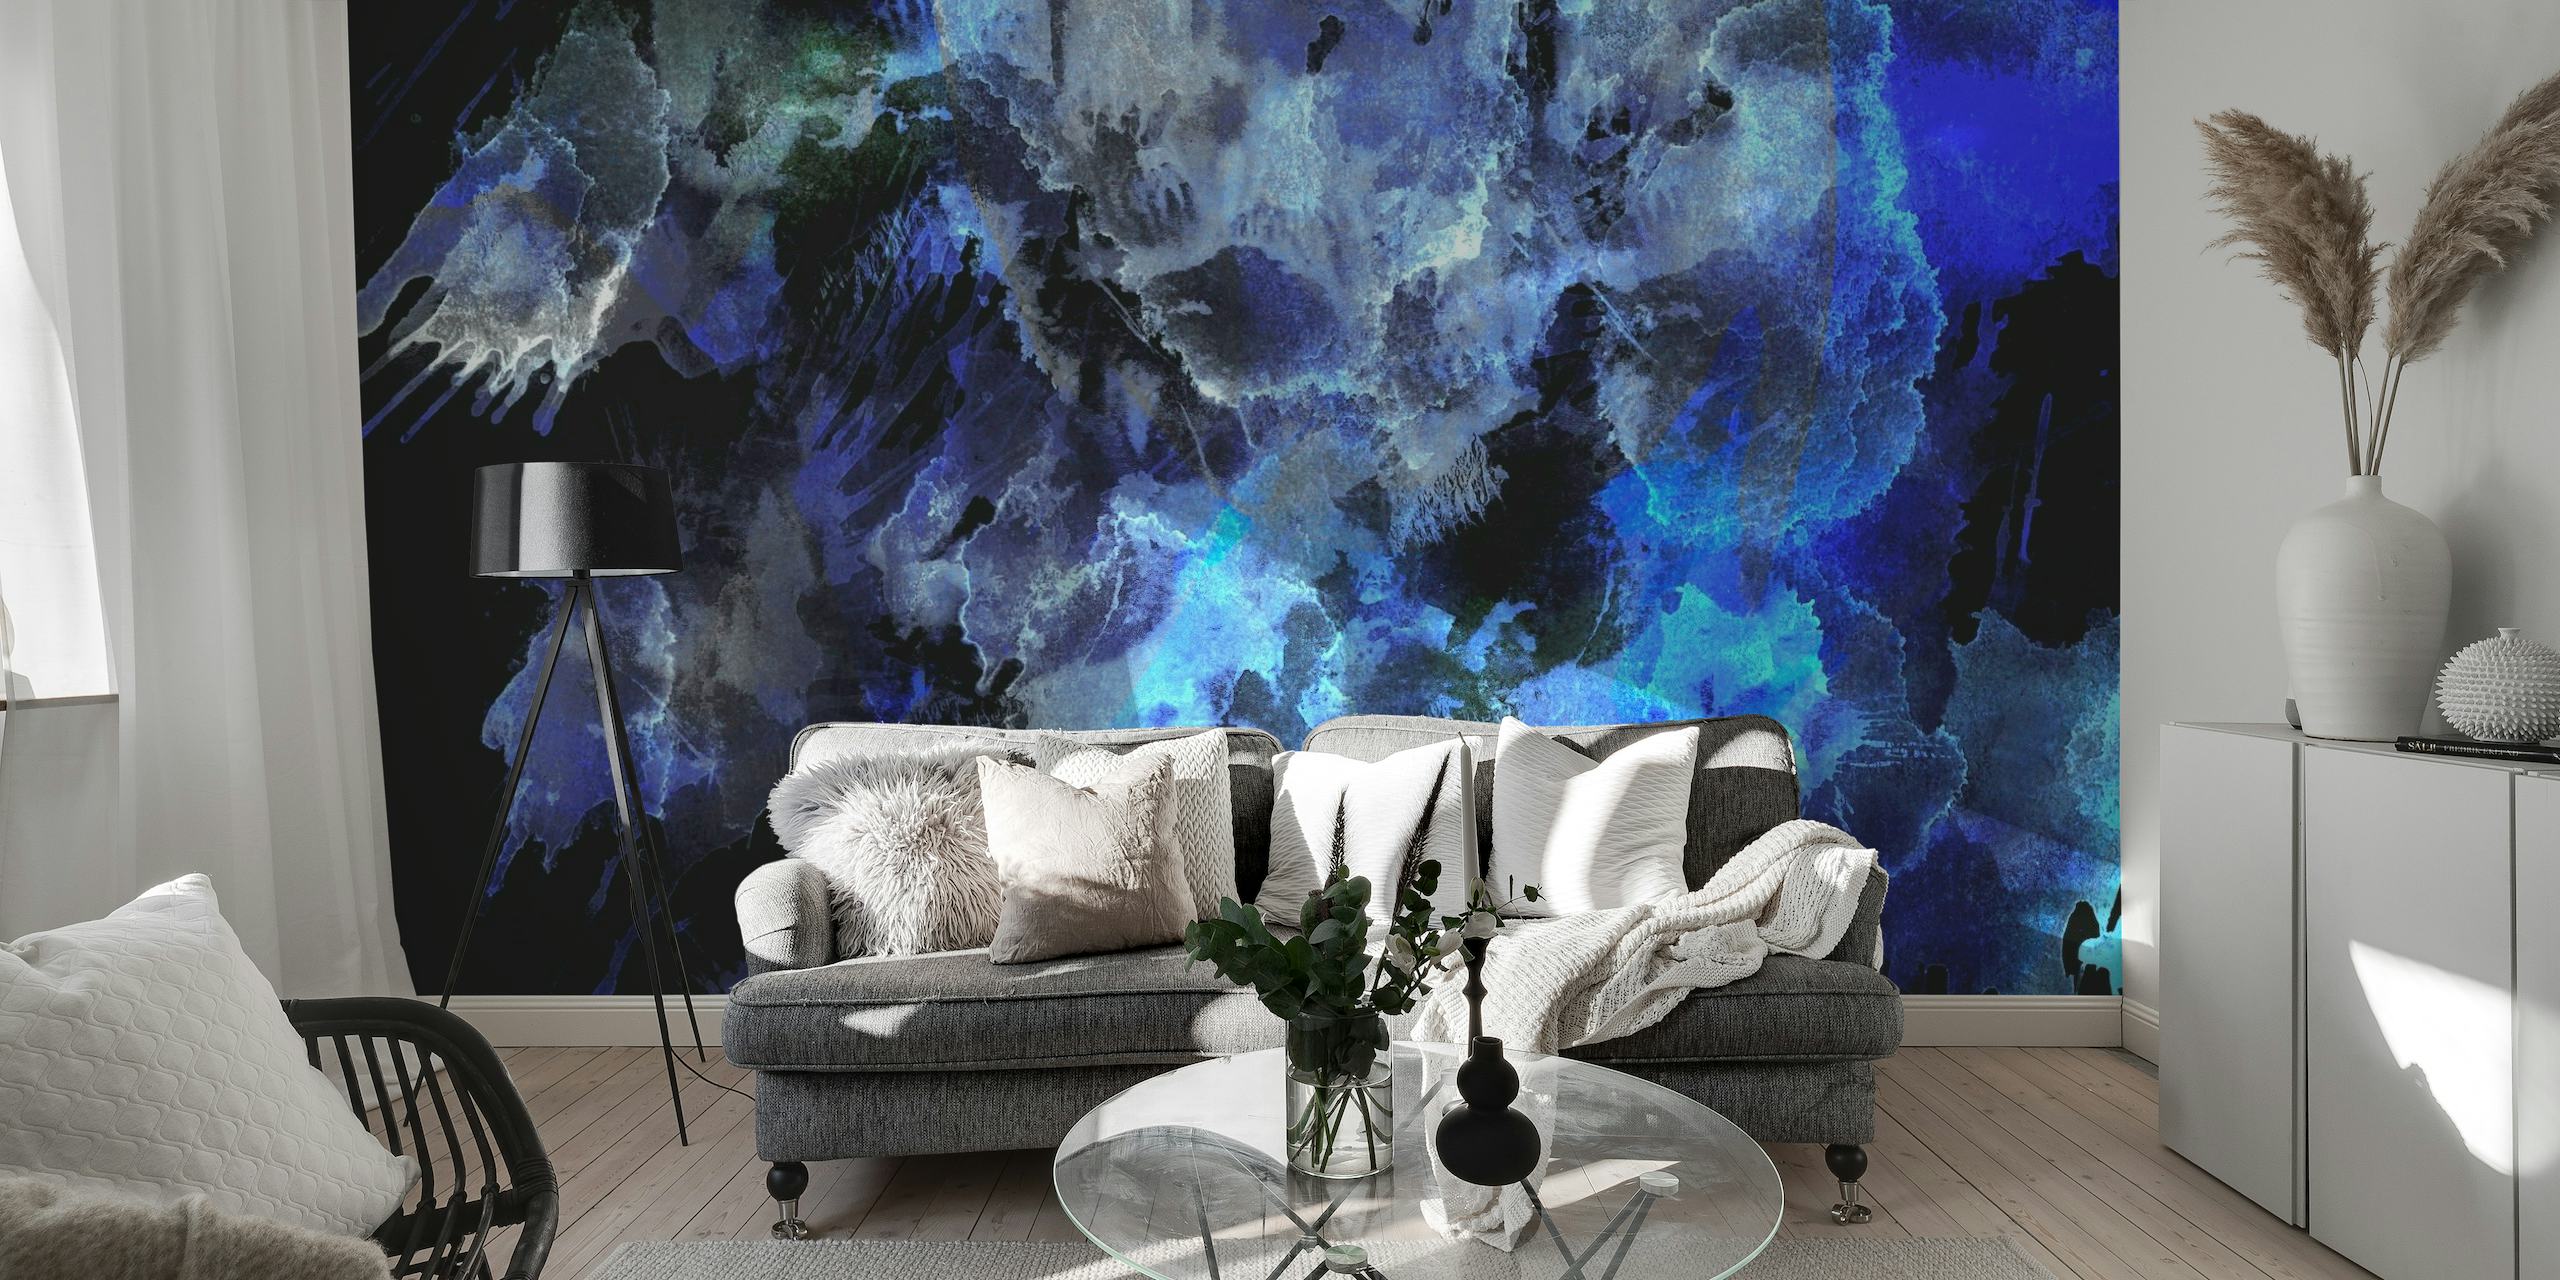 Abstrakte mitternachtsblaue und schwarze Aquarell-Wandmalerei, die eine ozeanische Atmosphäre schafft